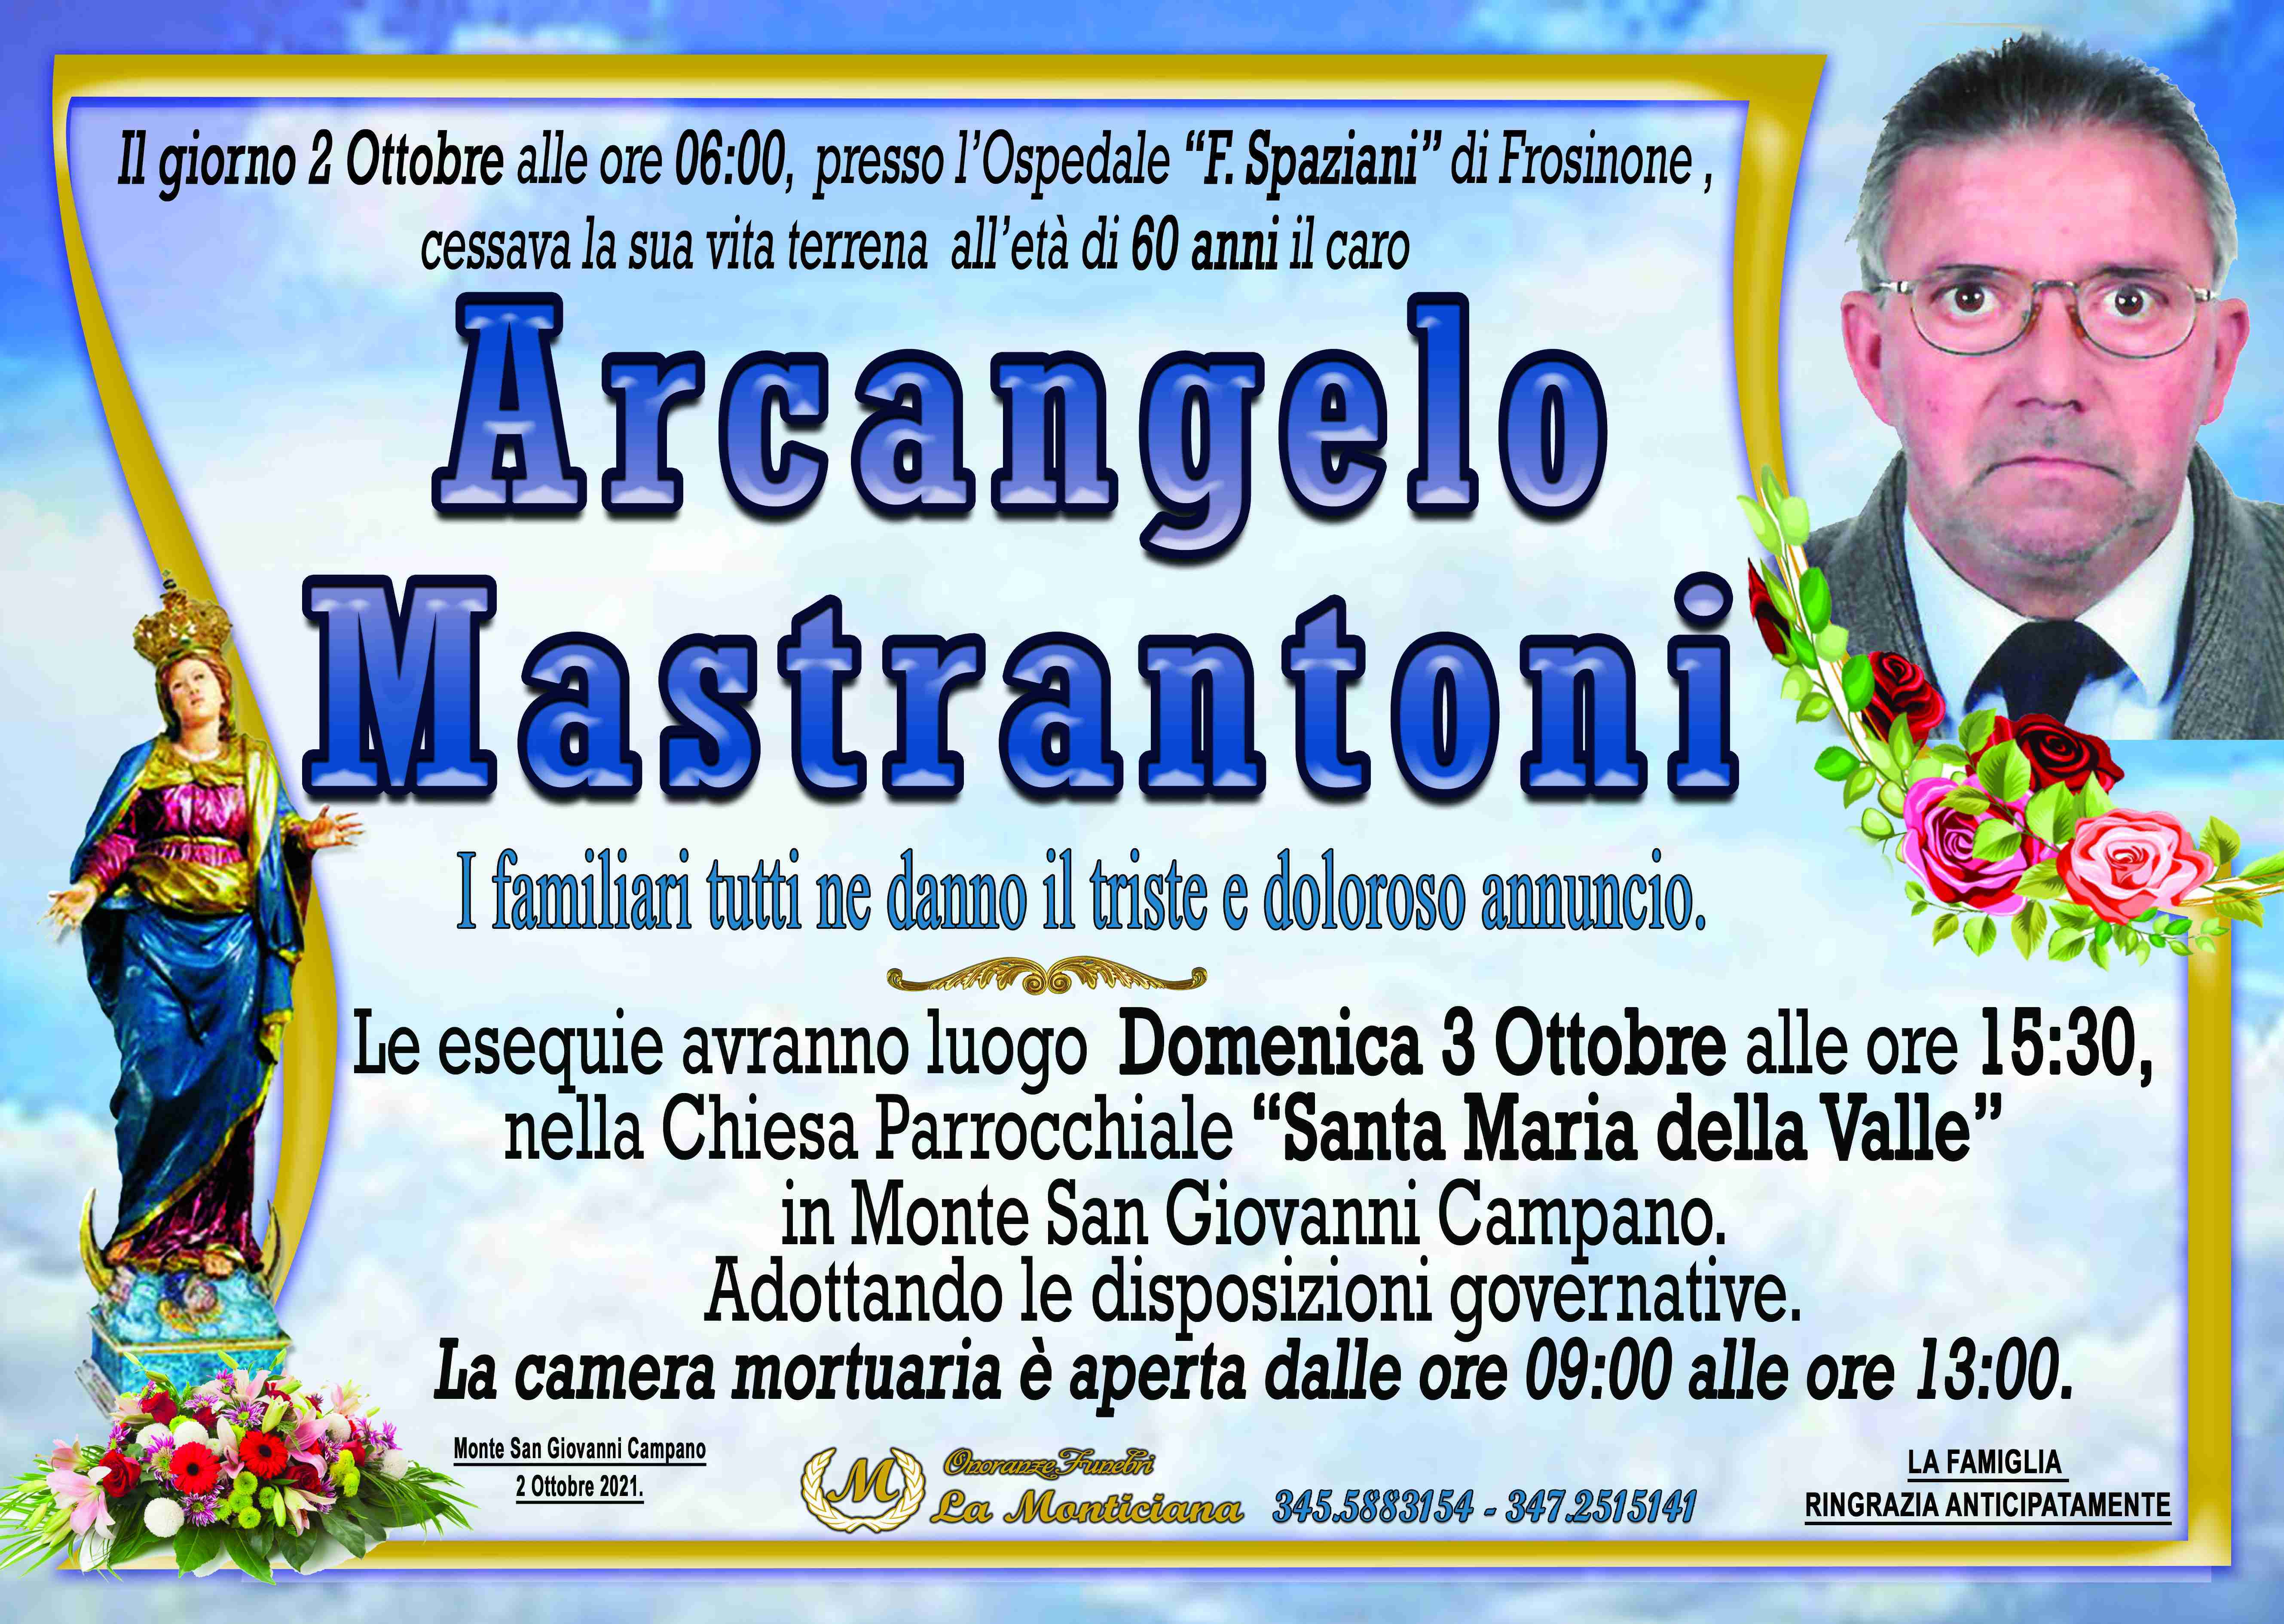 Arcangelo Mastrantoni